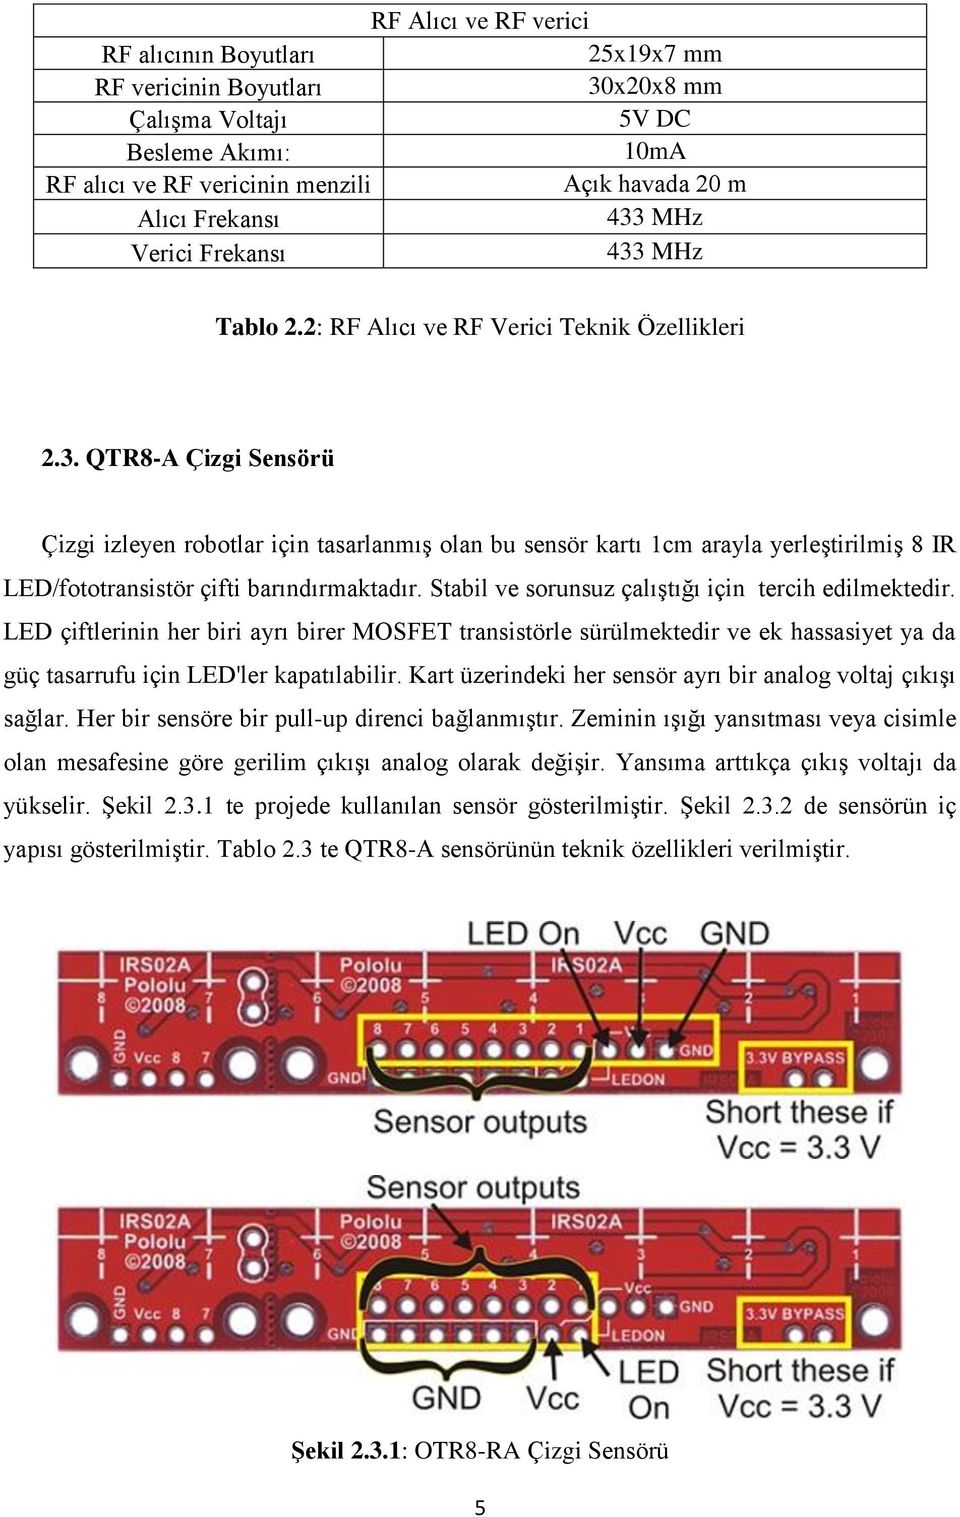 Stabil ve sorunsuz çalıştığı için tercih edilmektedir. LED çiftlerinin her biri ayrı birer MOSFET transistörle sürülmektedir ve ek hassasiyet ya da güç tasarrufu için LED'ler kapatılabilir.